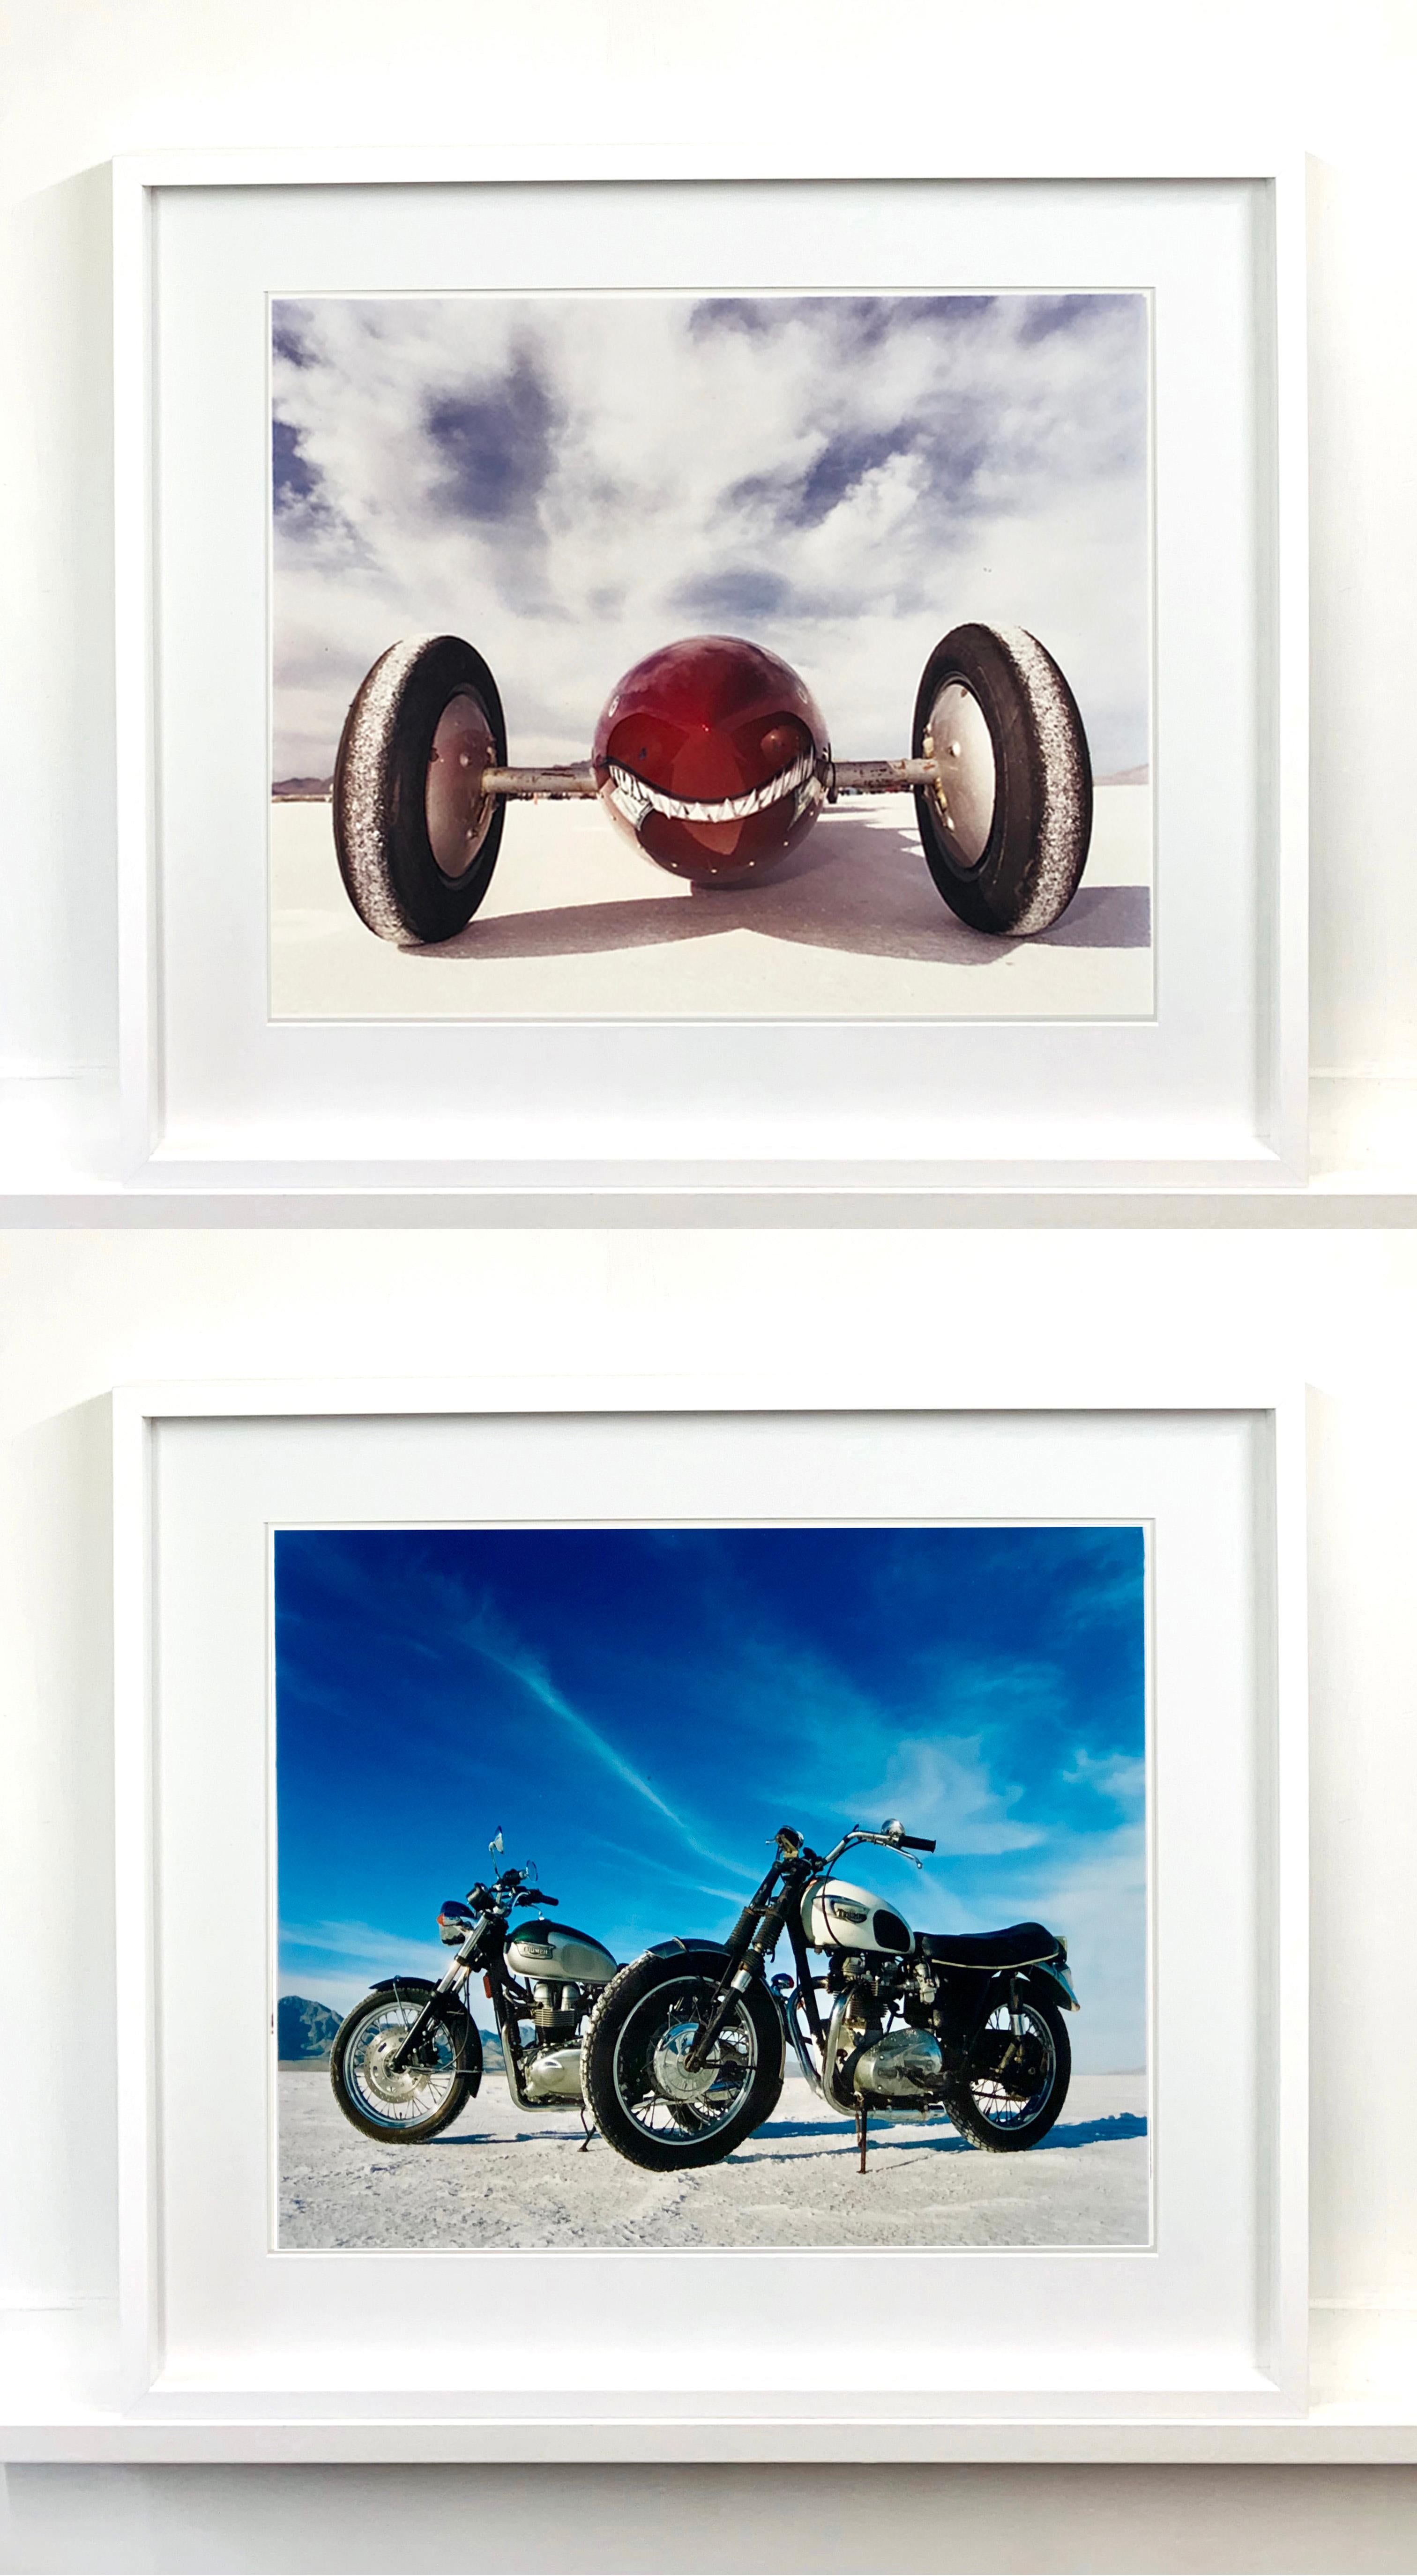 Bonneville Motorcycles, Bonneville, Utah - American Landscape Color Photography For Sale 3